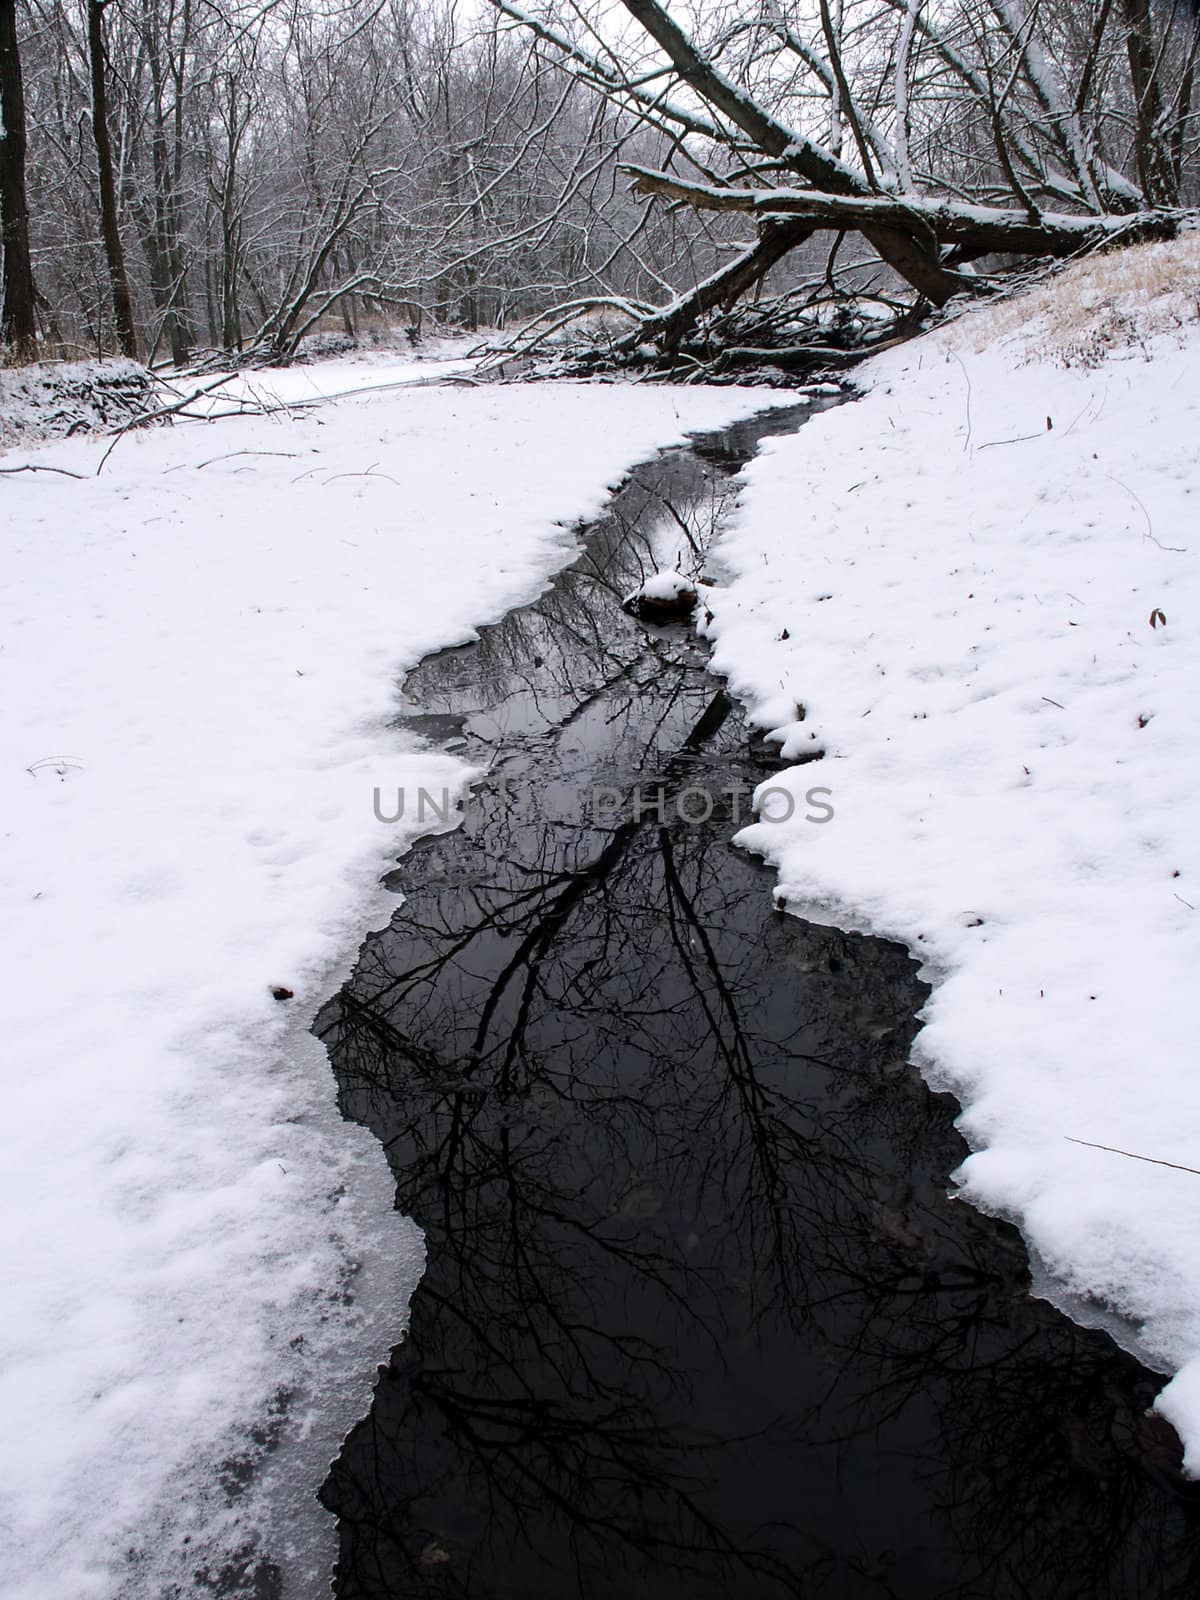 Winter Stream Scene in Illinois by Wirepec